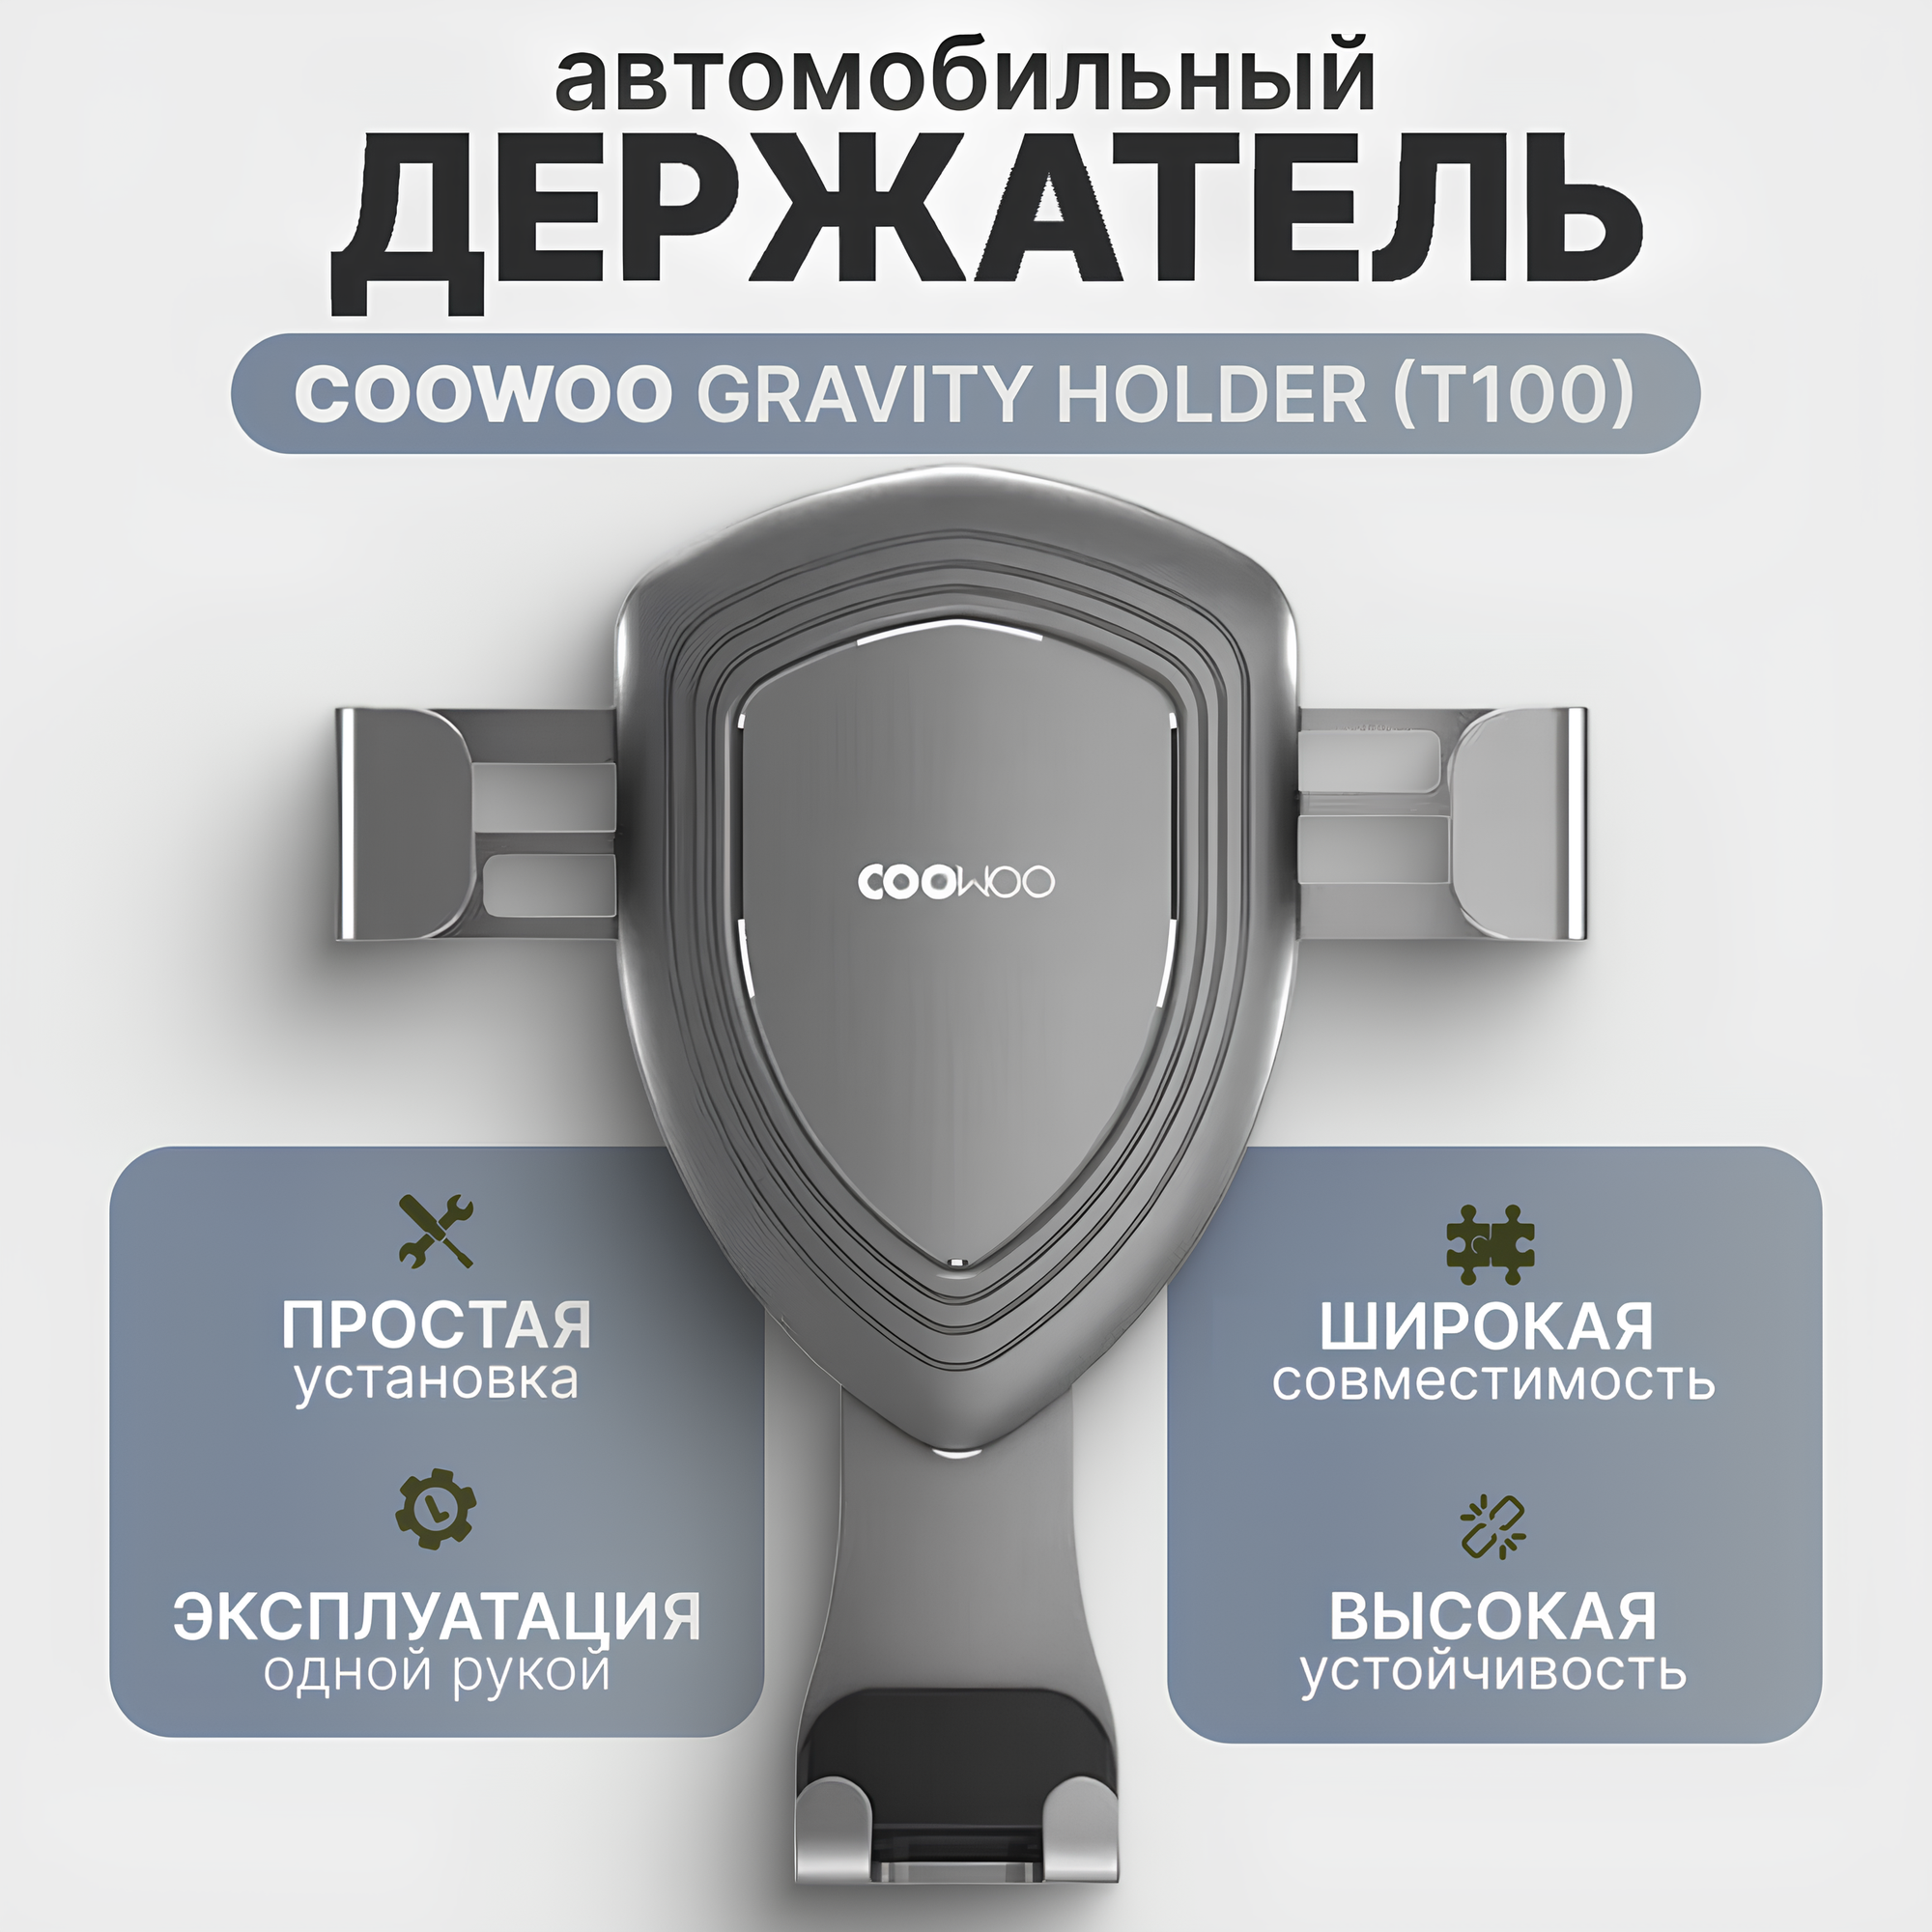 Автомобильный держатель COOWOO Gravity Holder T100, серебристо-серый